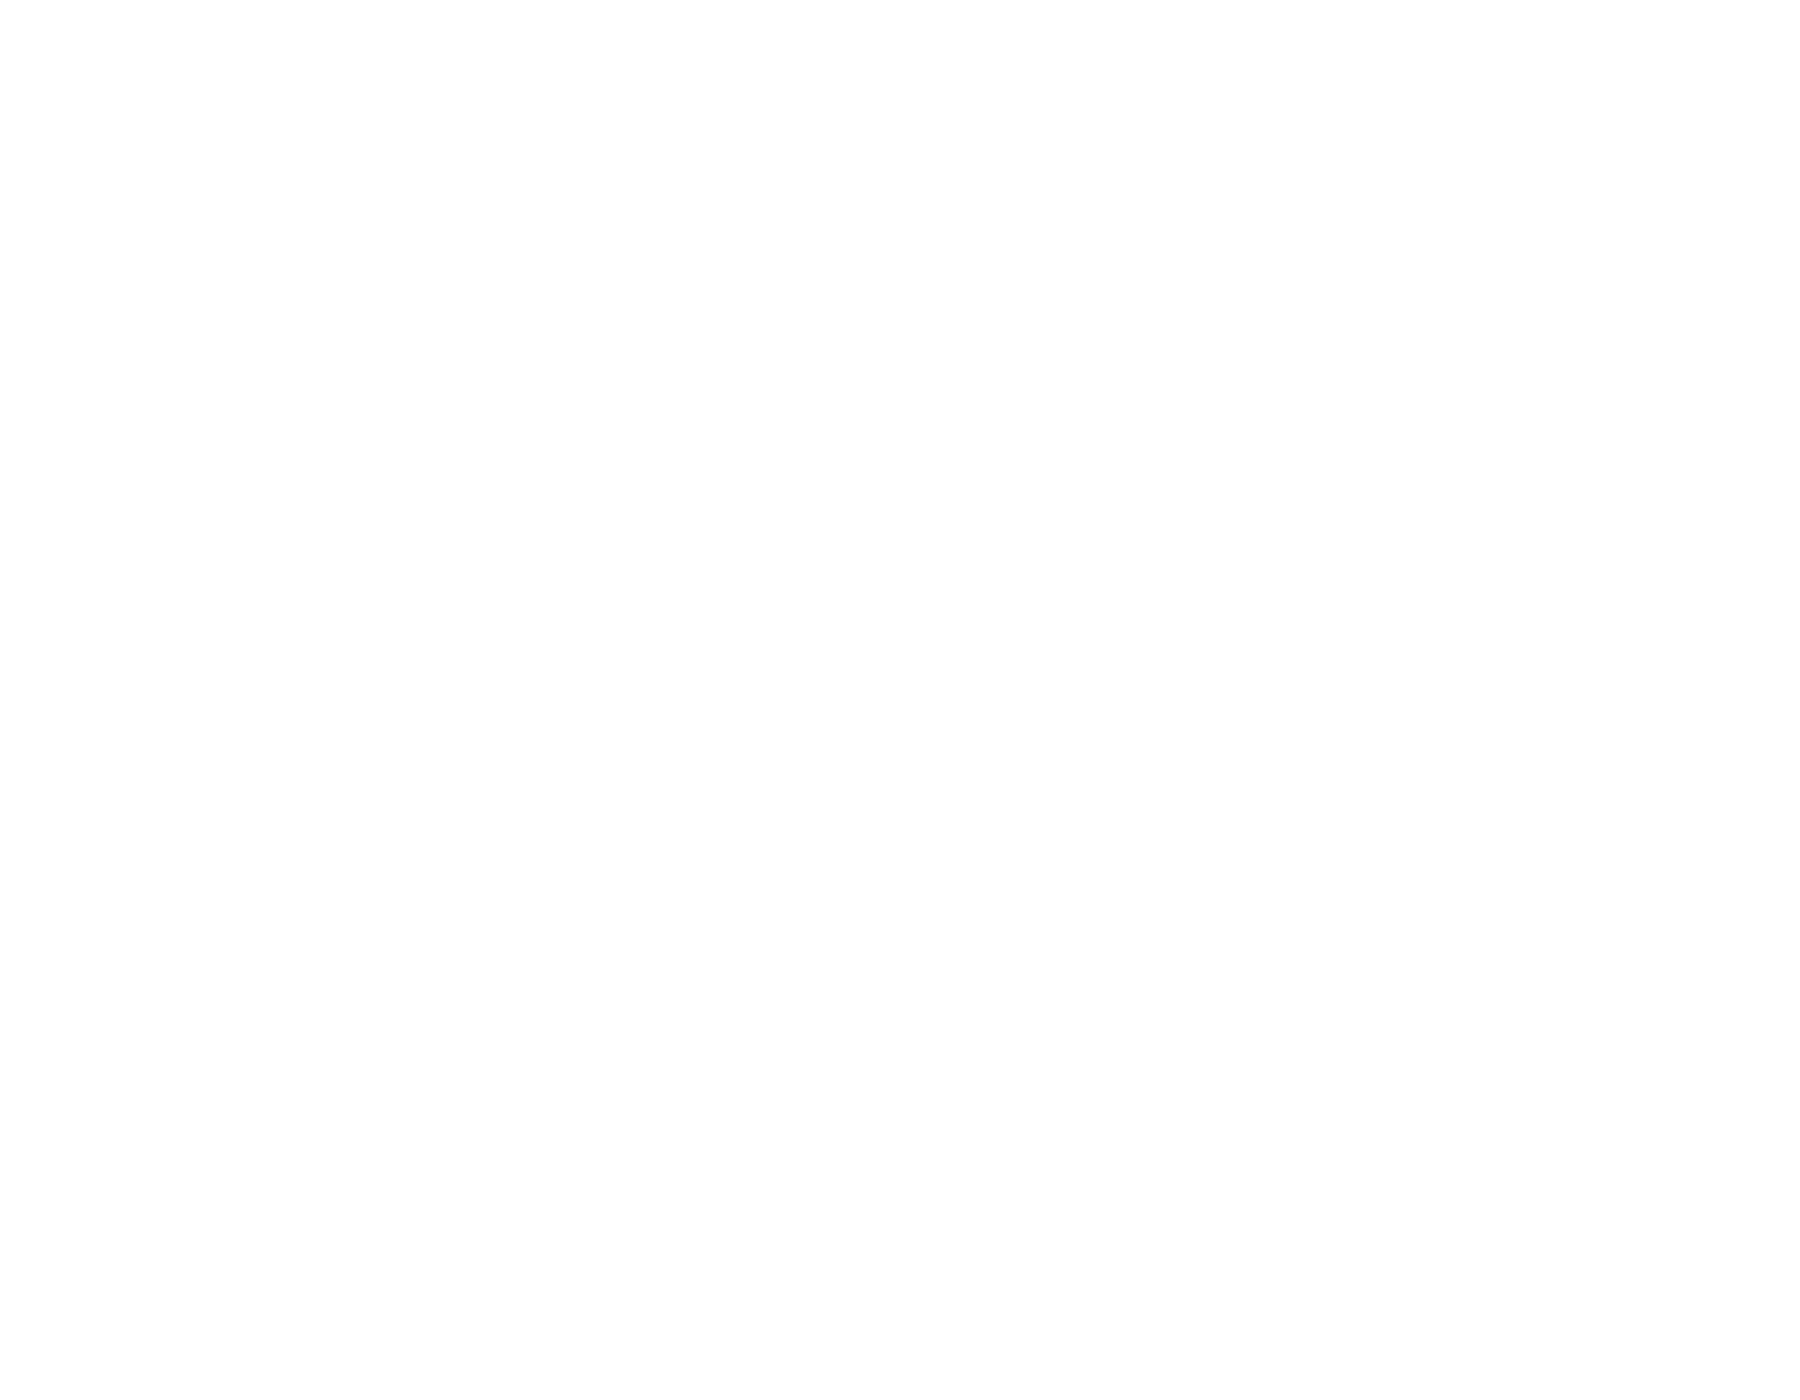 TripGain